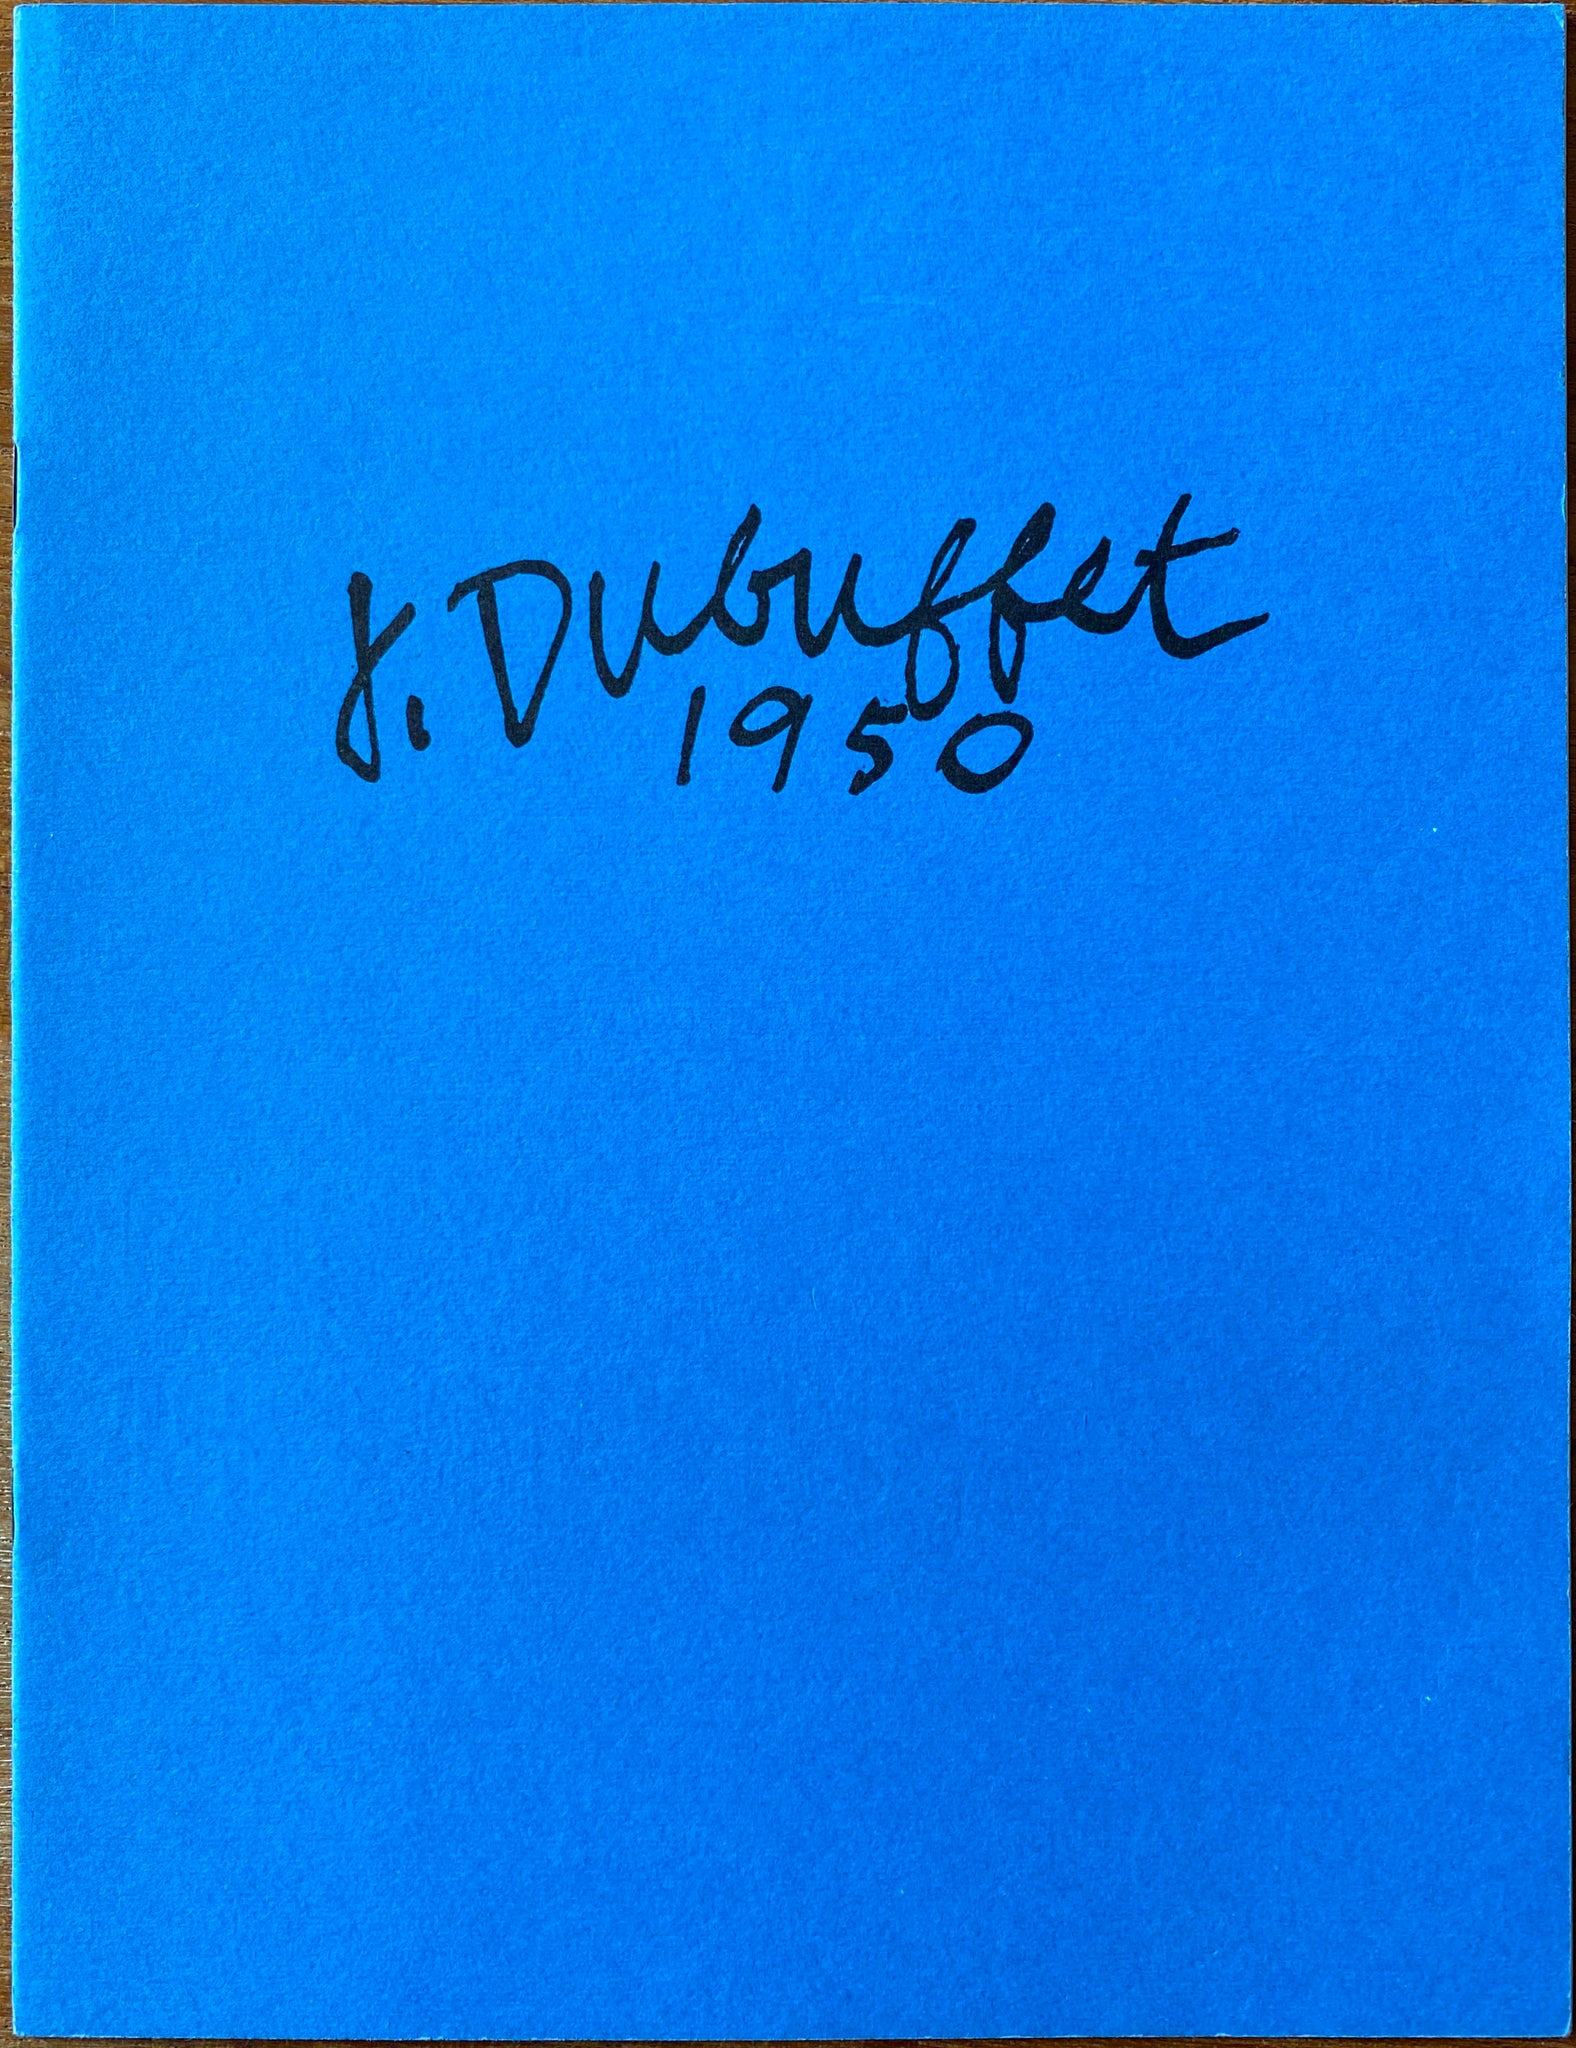 J. Dubuffet 1950.